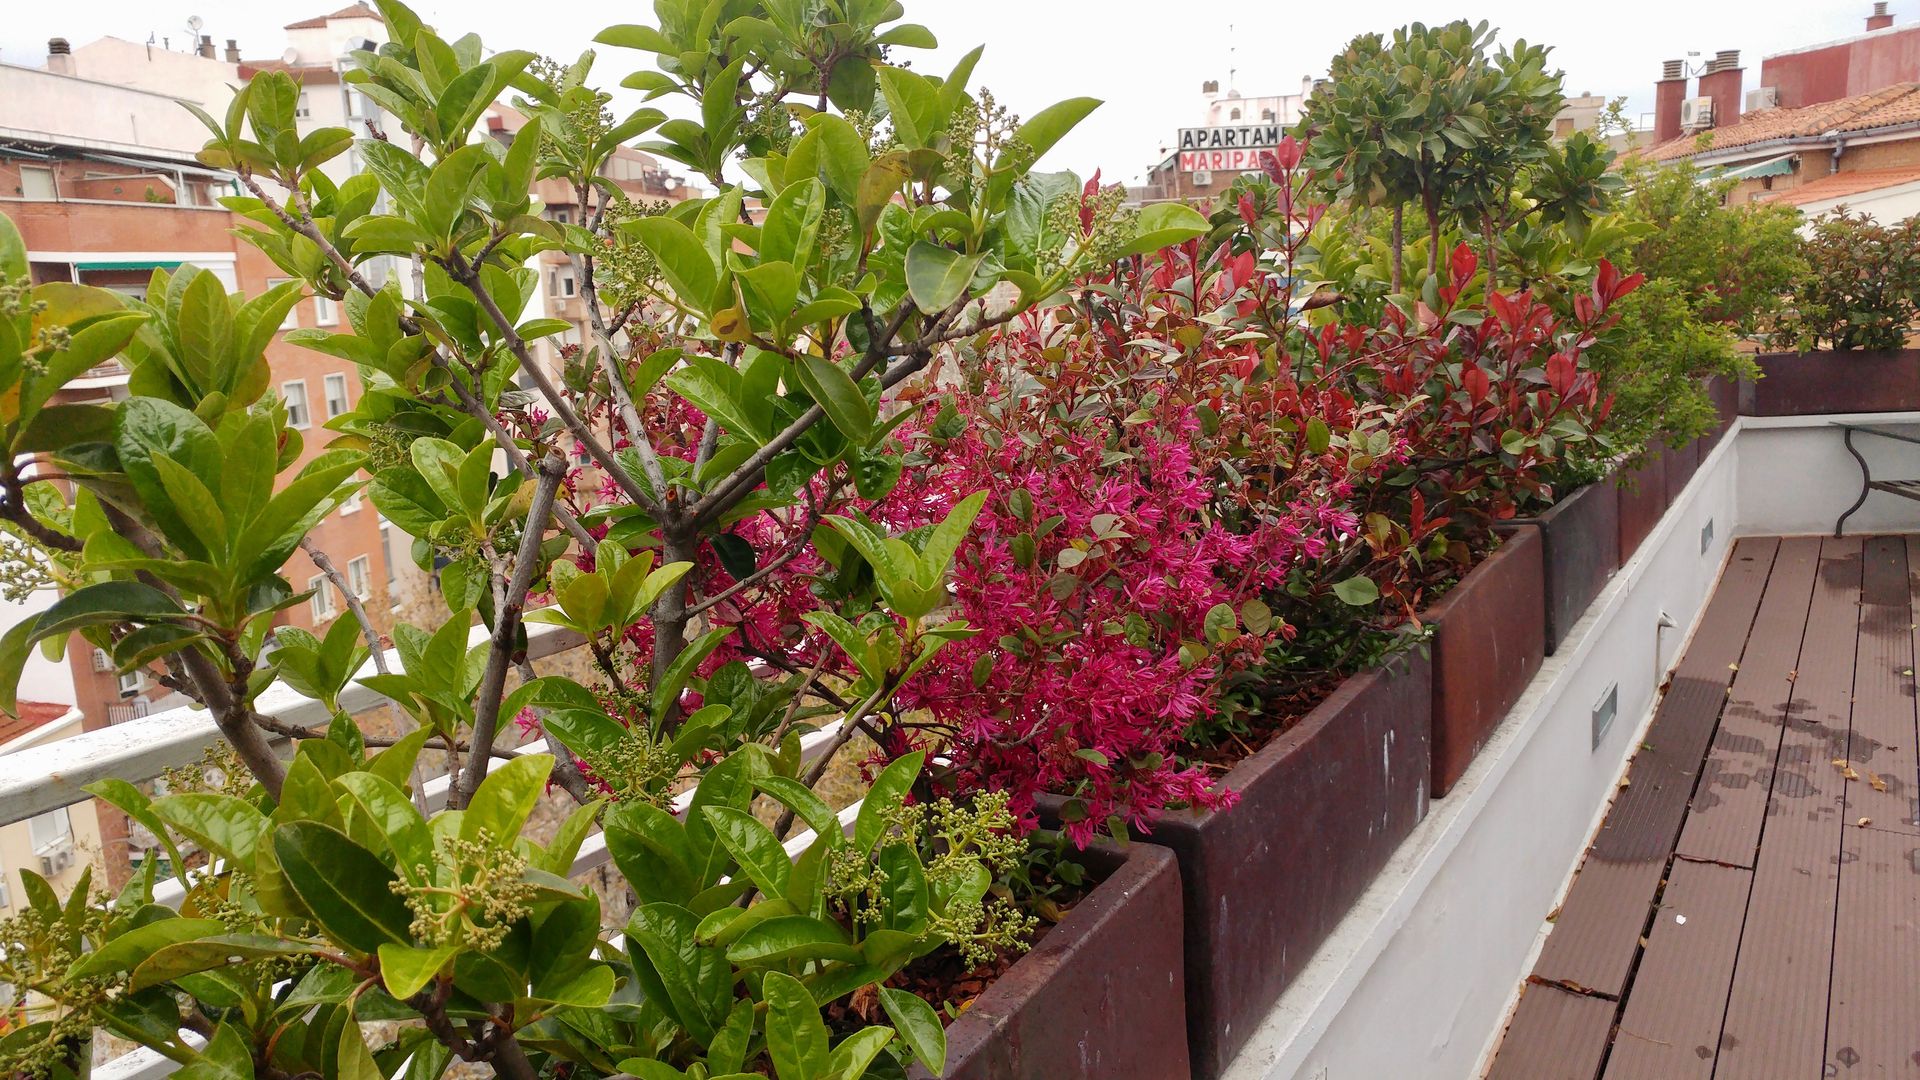 Los colores de los arbustos homify Balcones y terrazas de estilo moderno terraza,diseño,plantas,arbustos